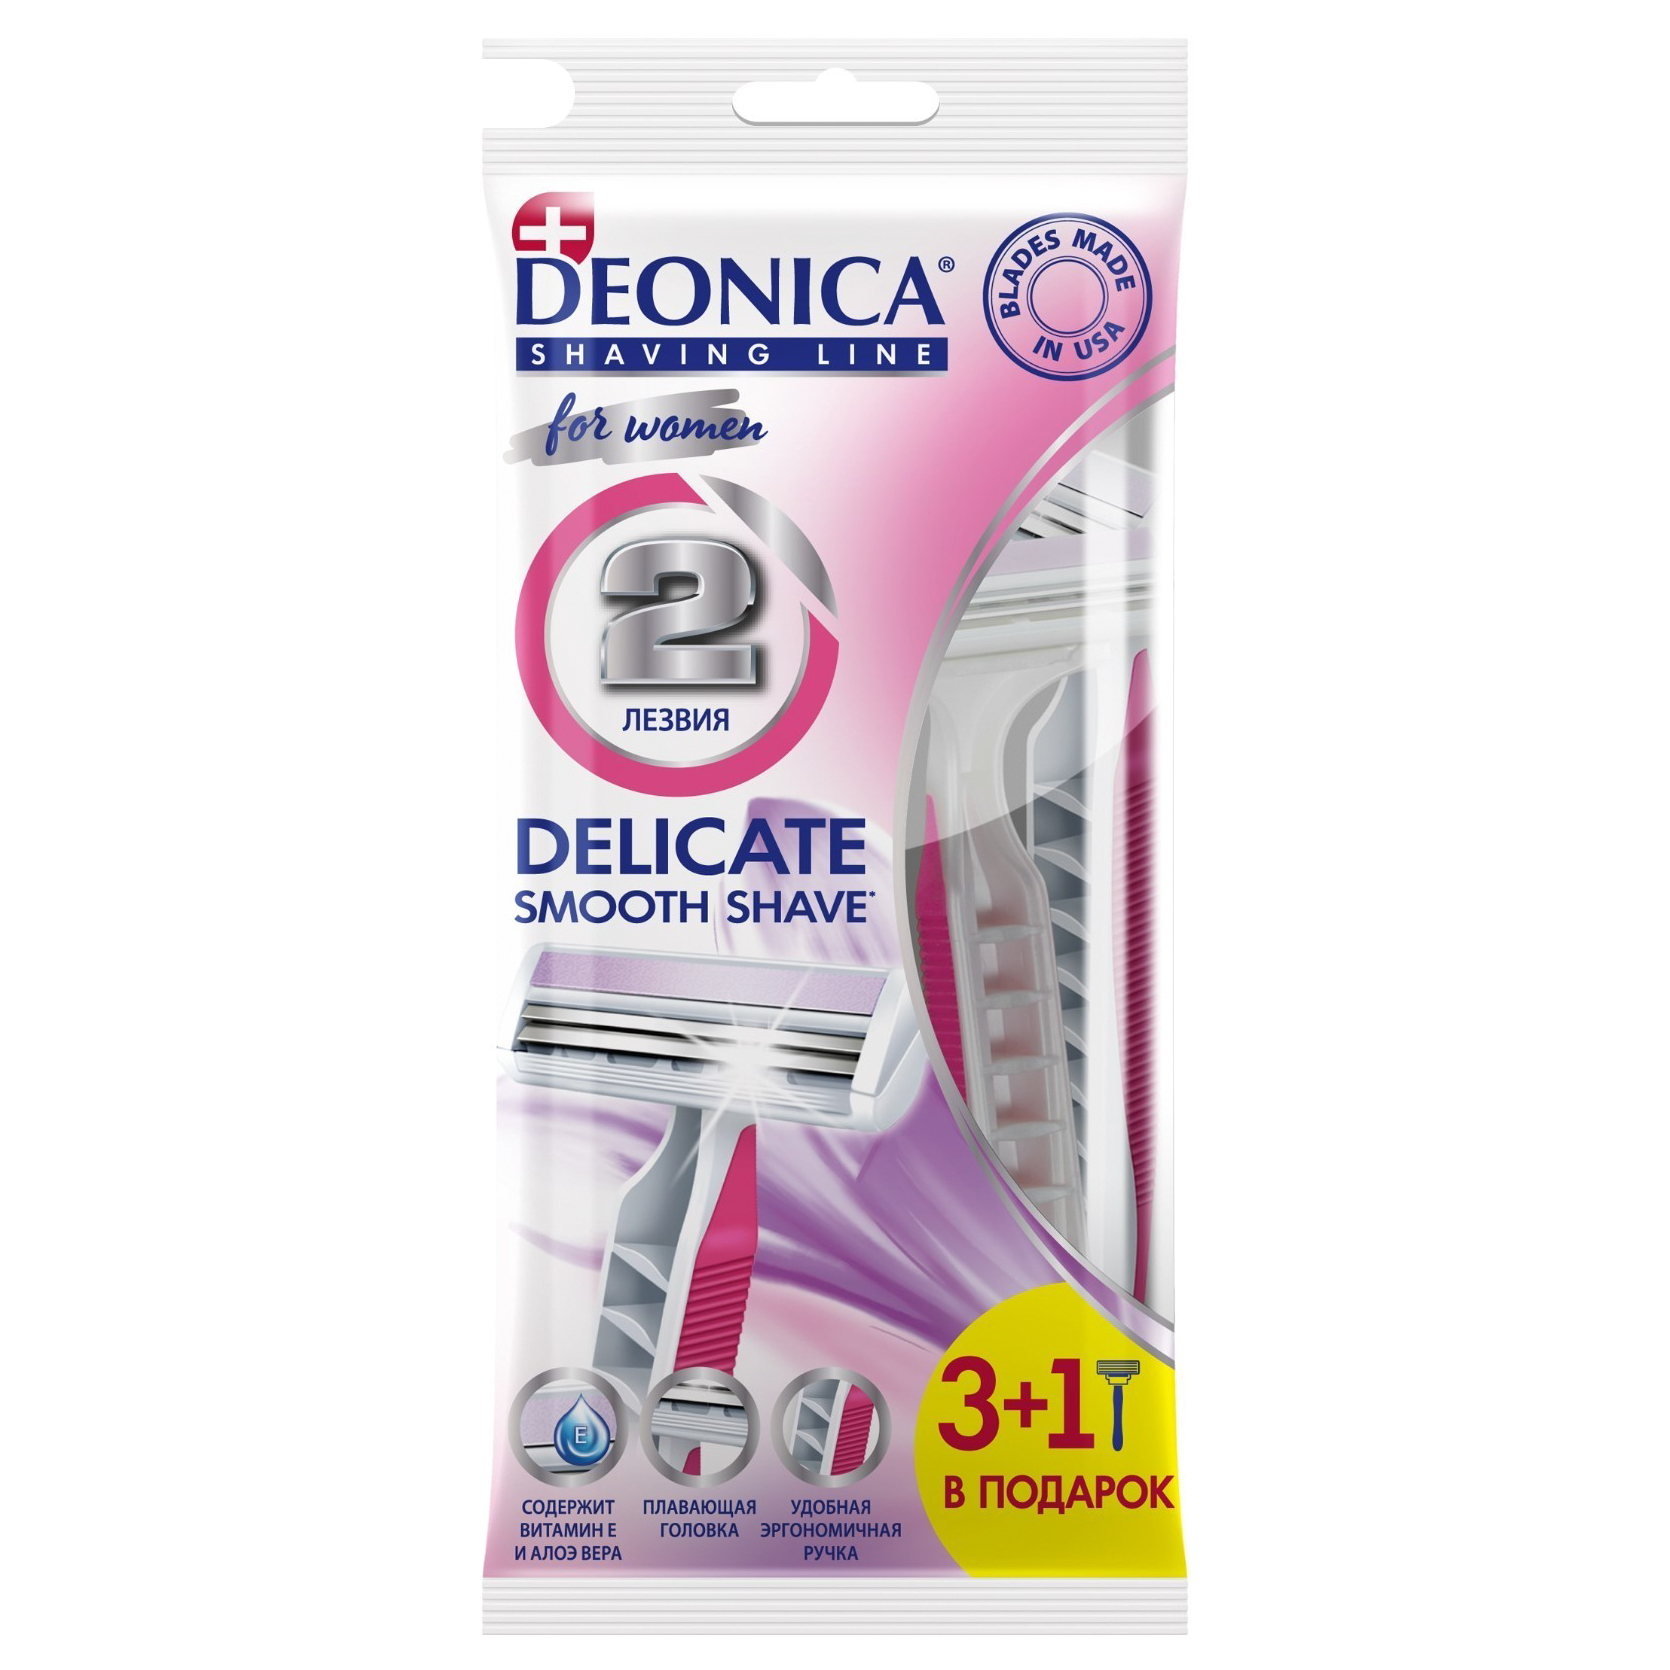 Станок для бритья одноразовый Deonica 2 For Women 3+1 шт одноразовый станок для бритья gillette simply venus 3 4шт